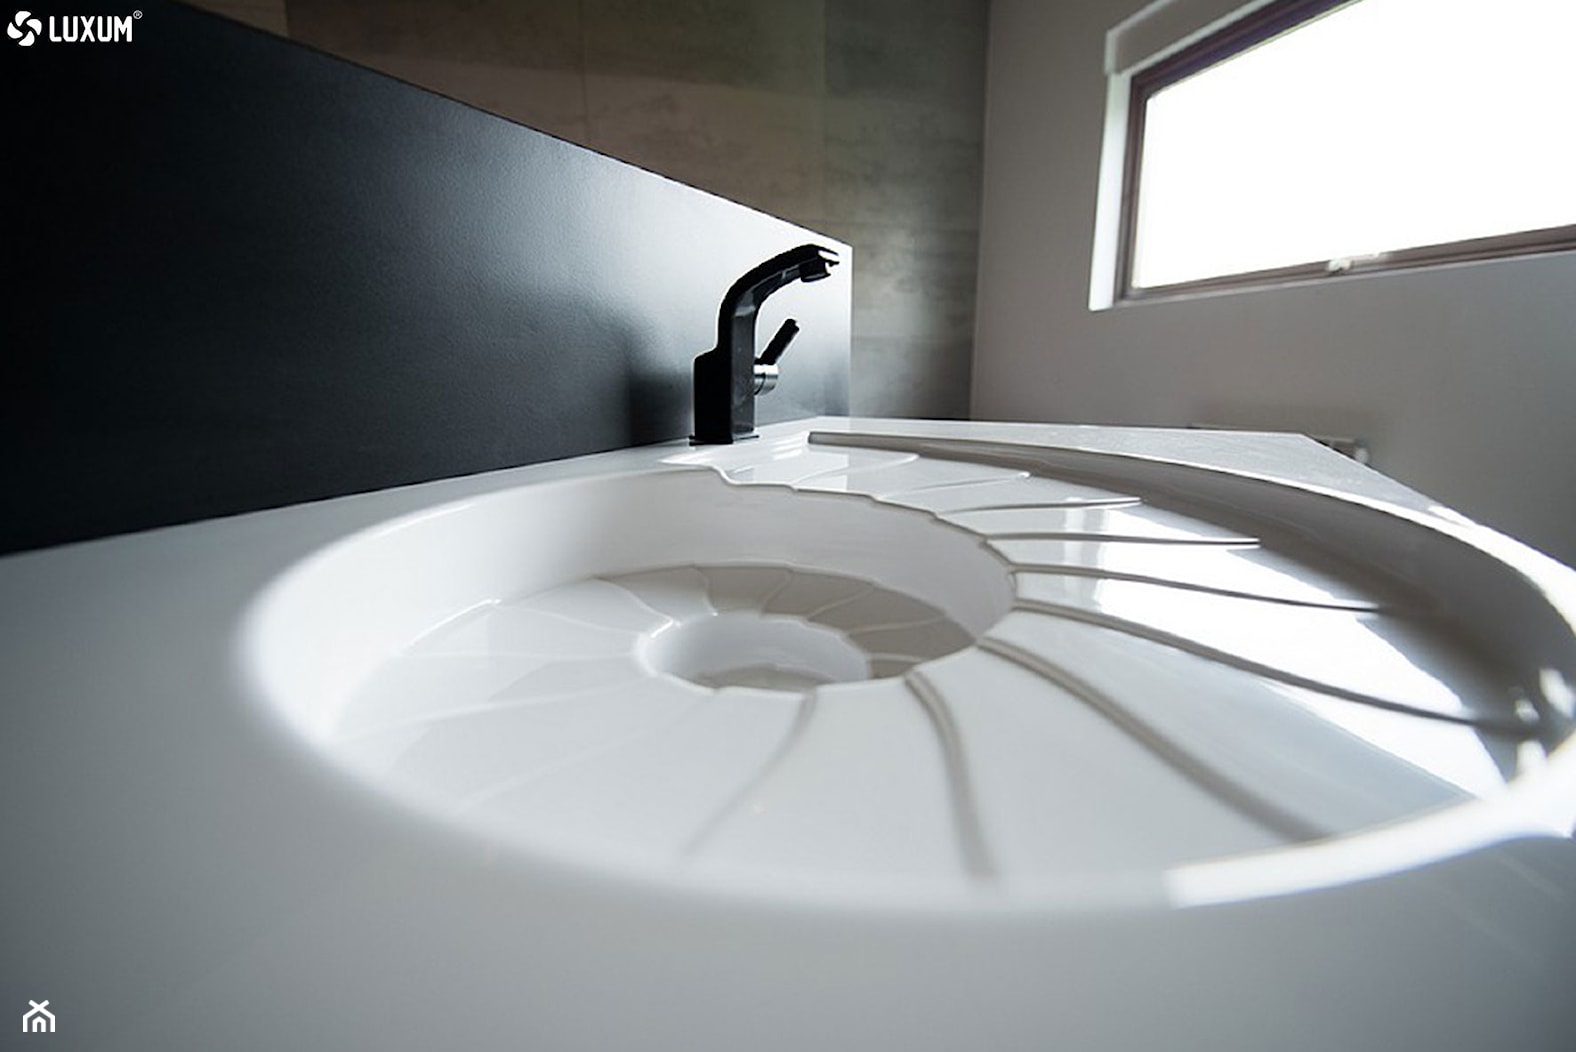 Designerska umywalka w kształcie amonitu. - Łazienka, styl nowoczesny - zdjęcie od Luxum - Homebook